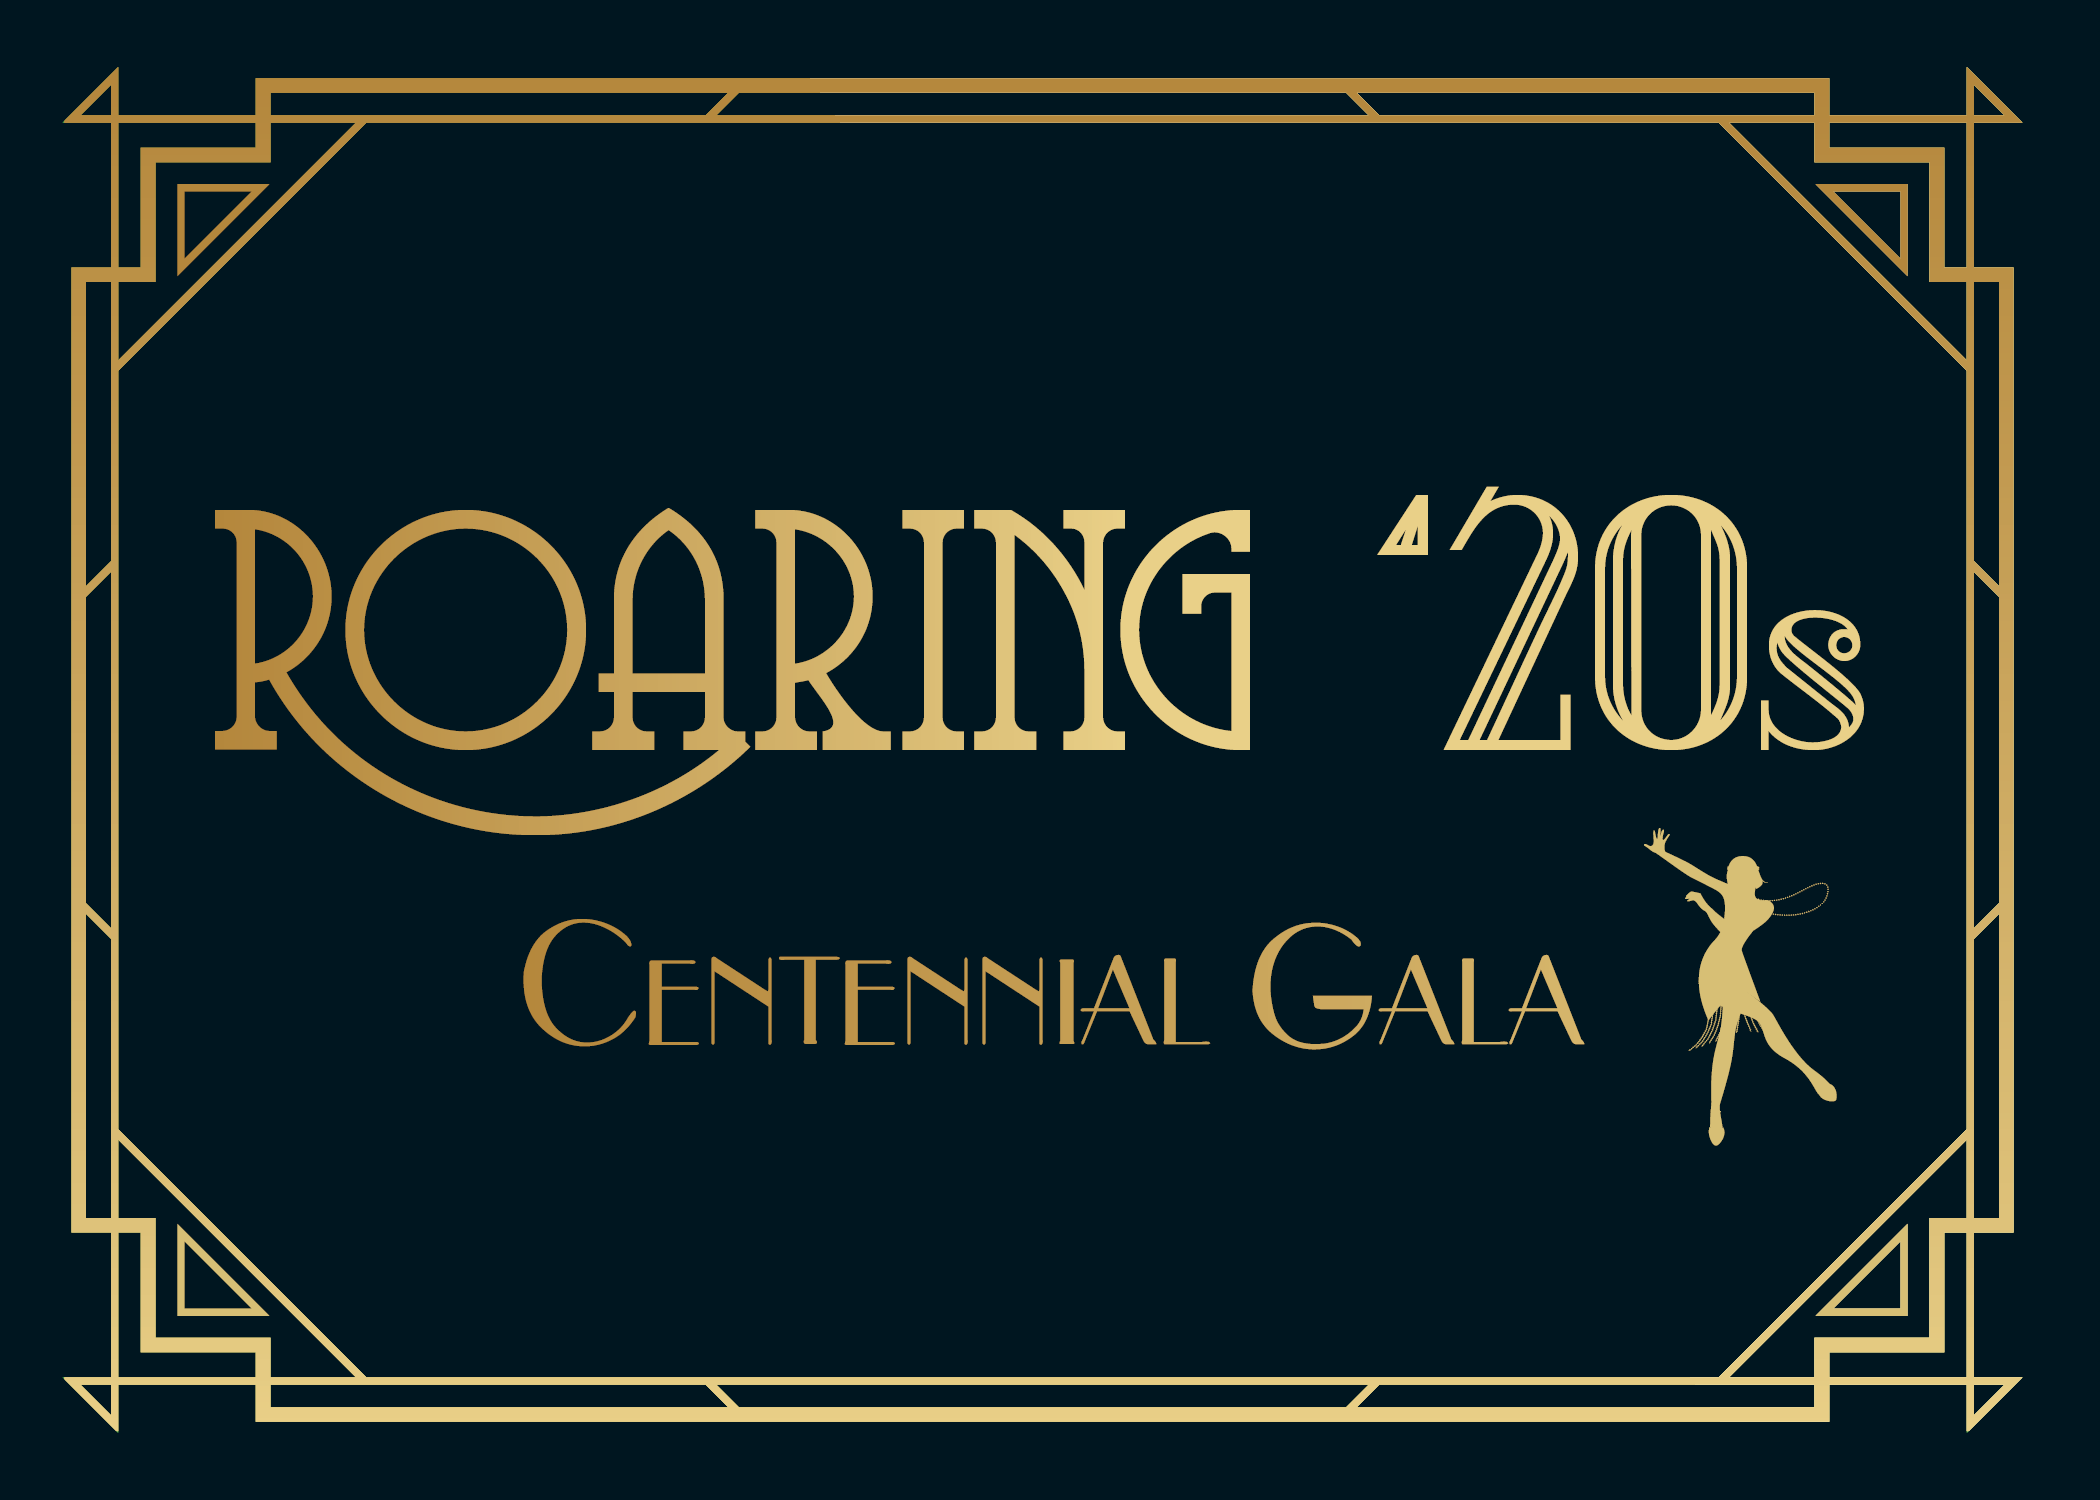 Roaring 20s Centennial Gala